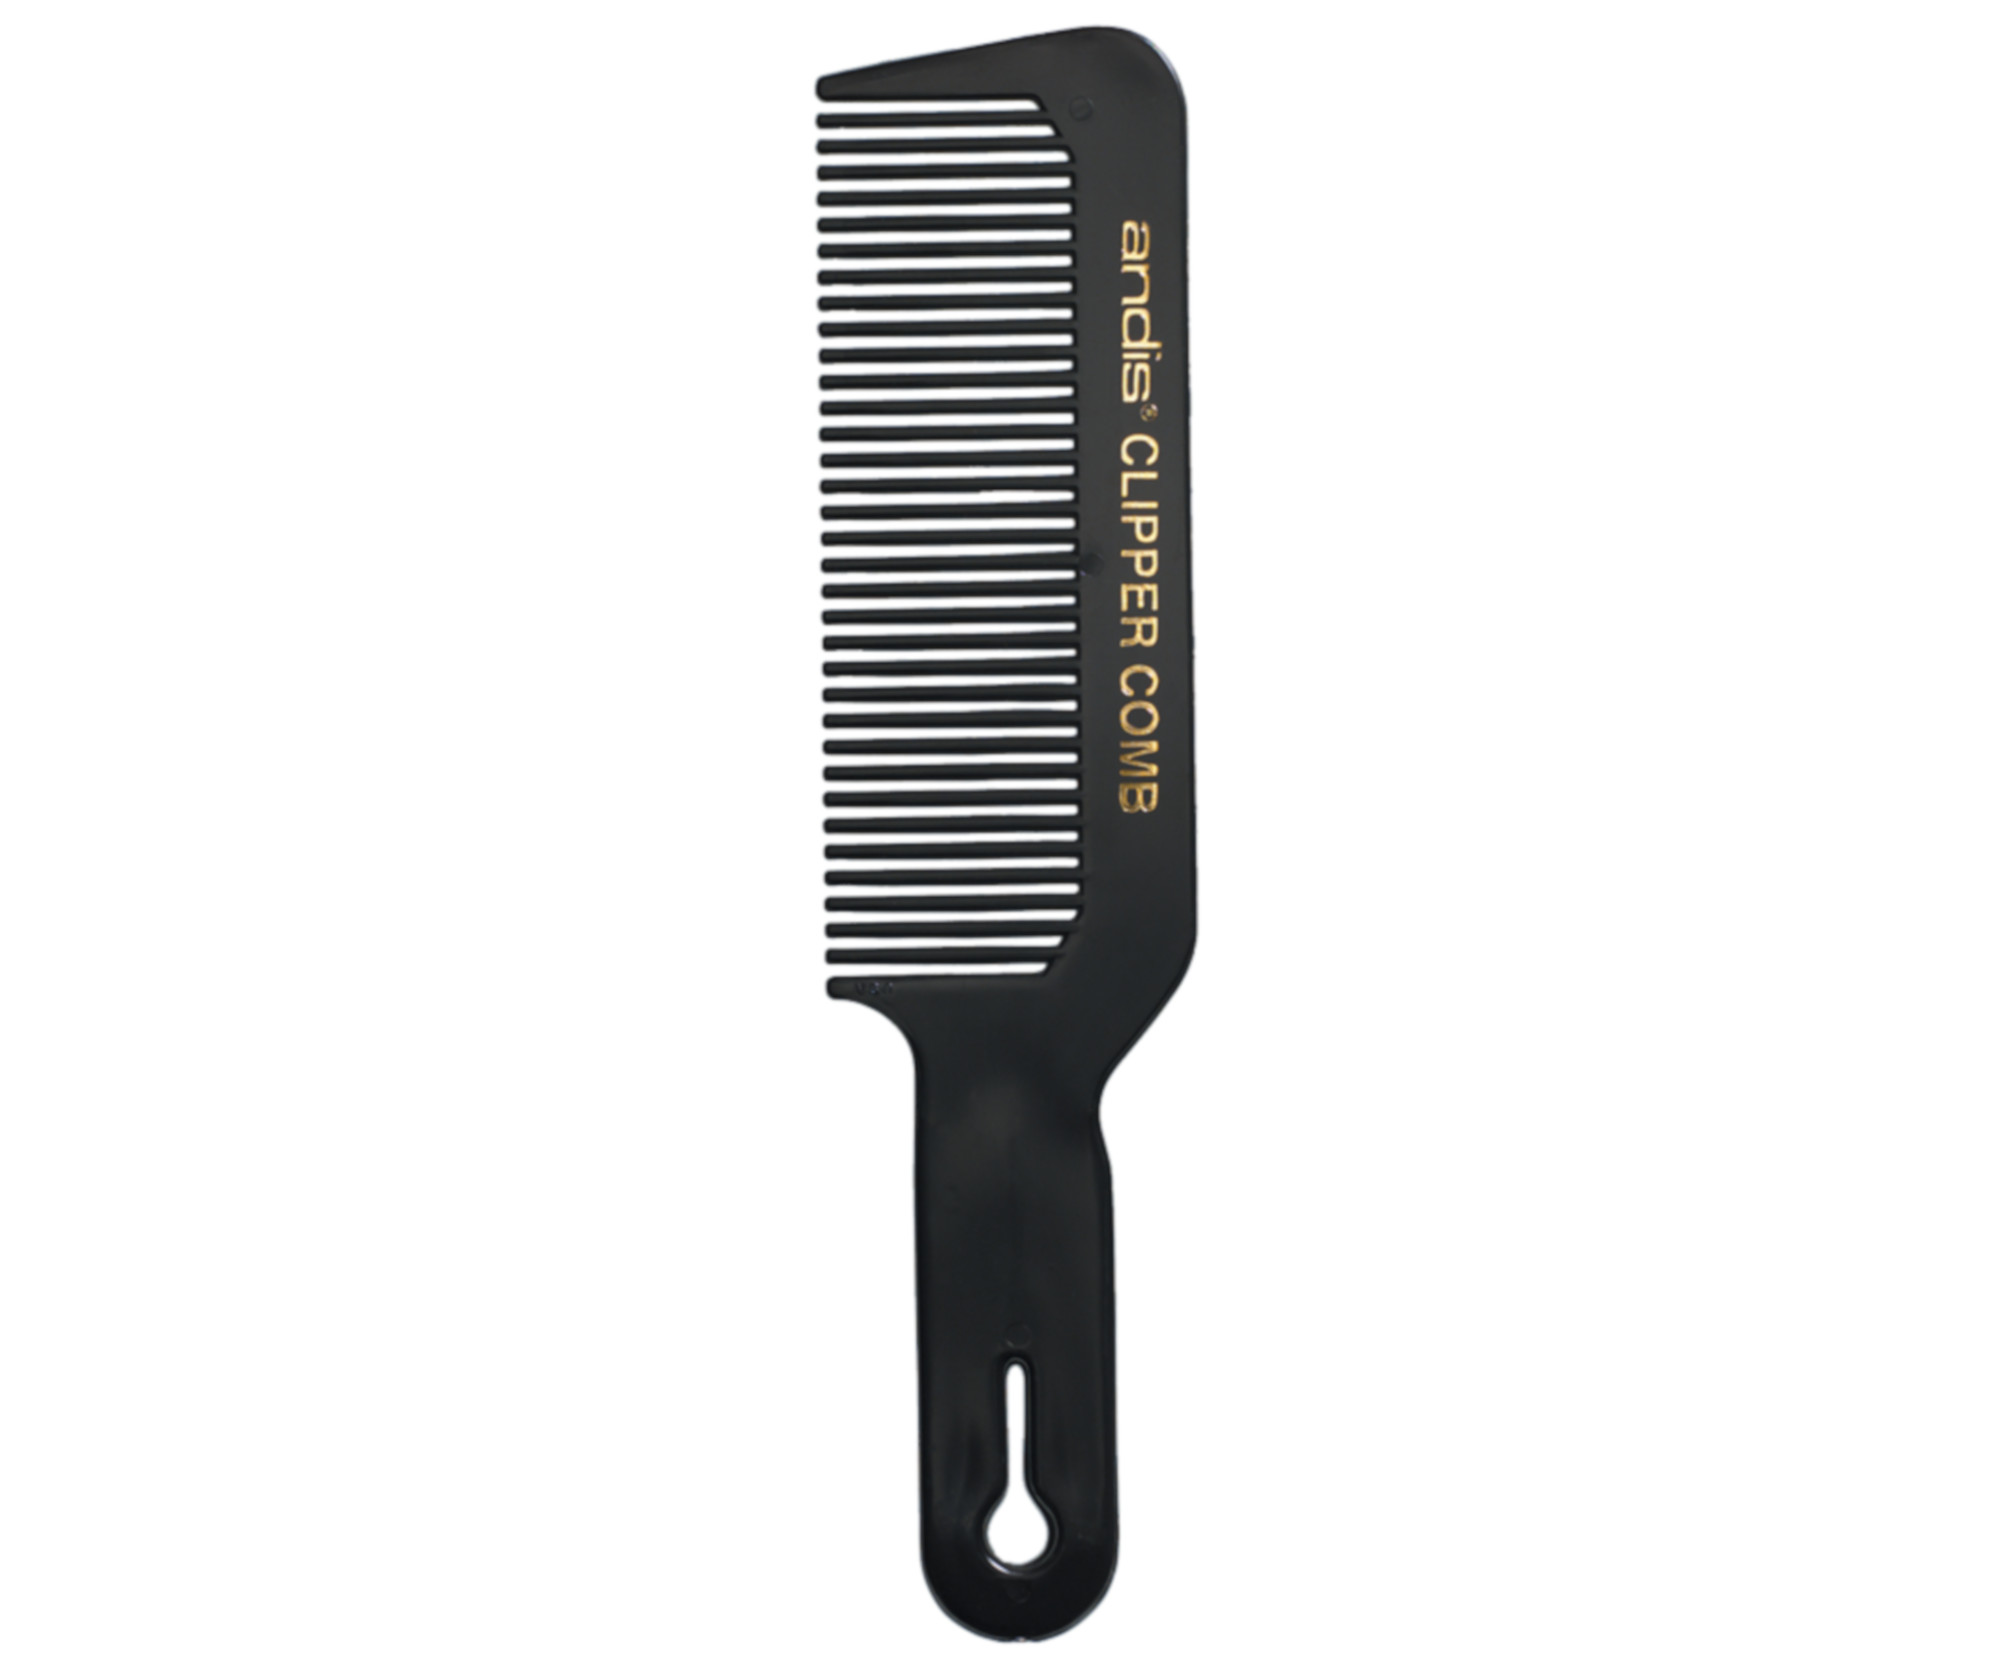 Barber hřeben na vlasy Andis 12109 - černý + dárek zdarma